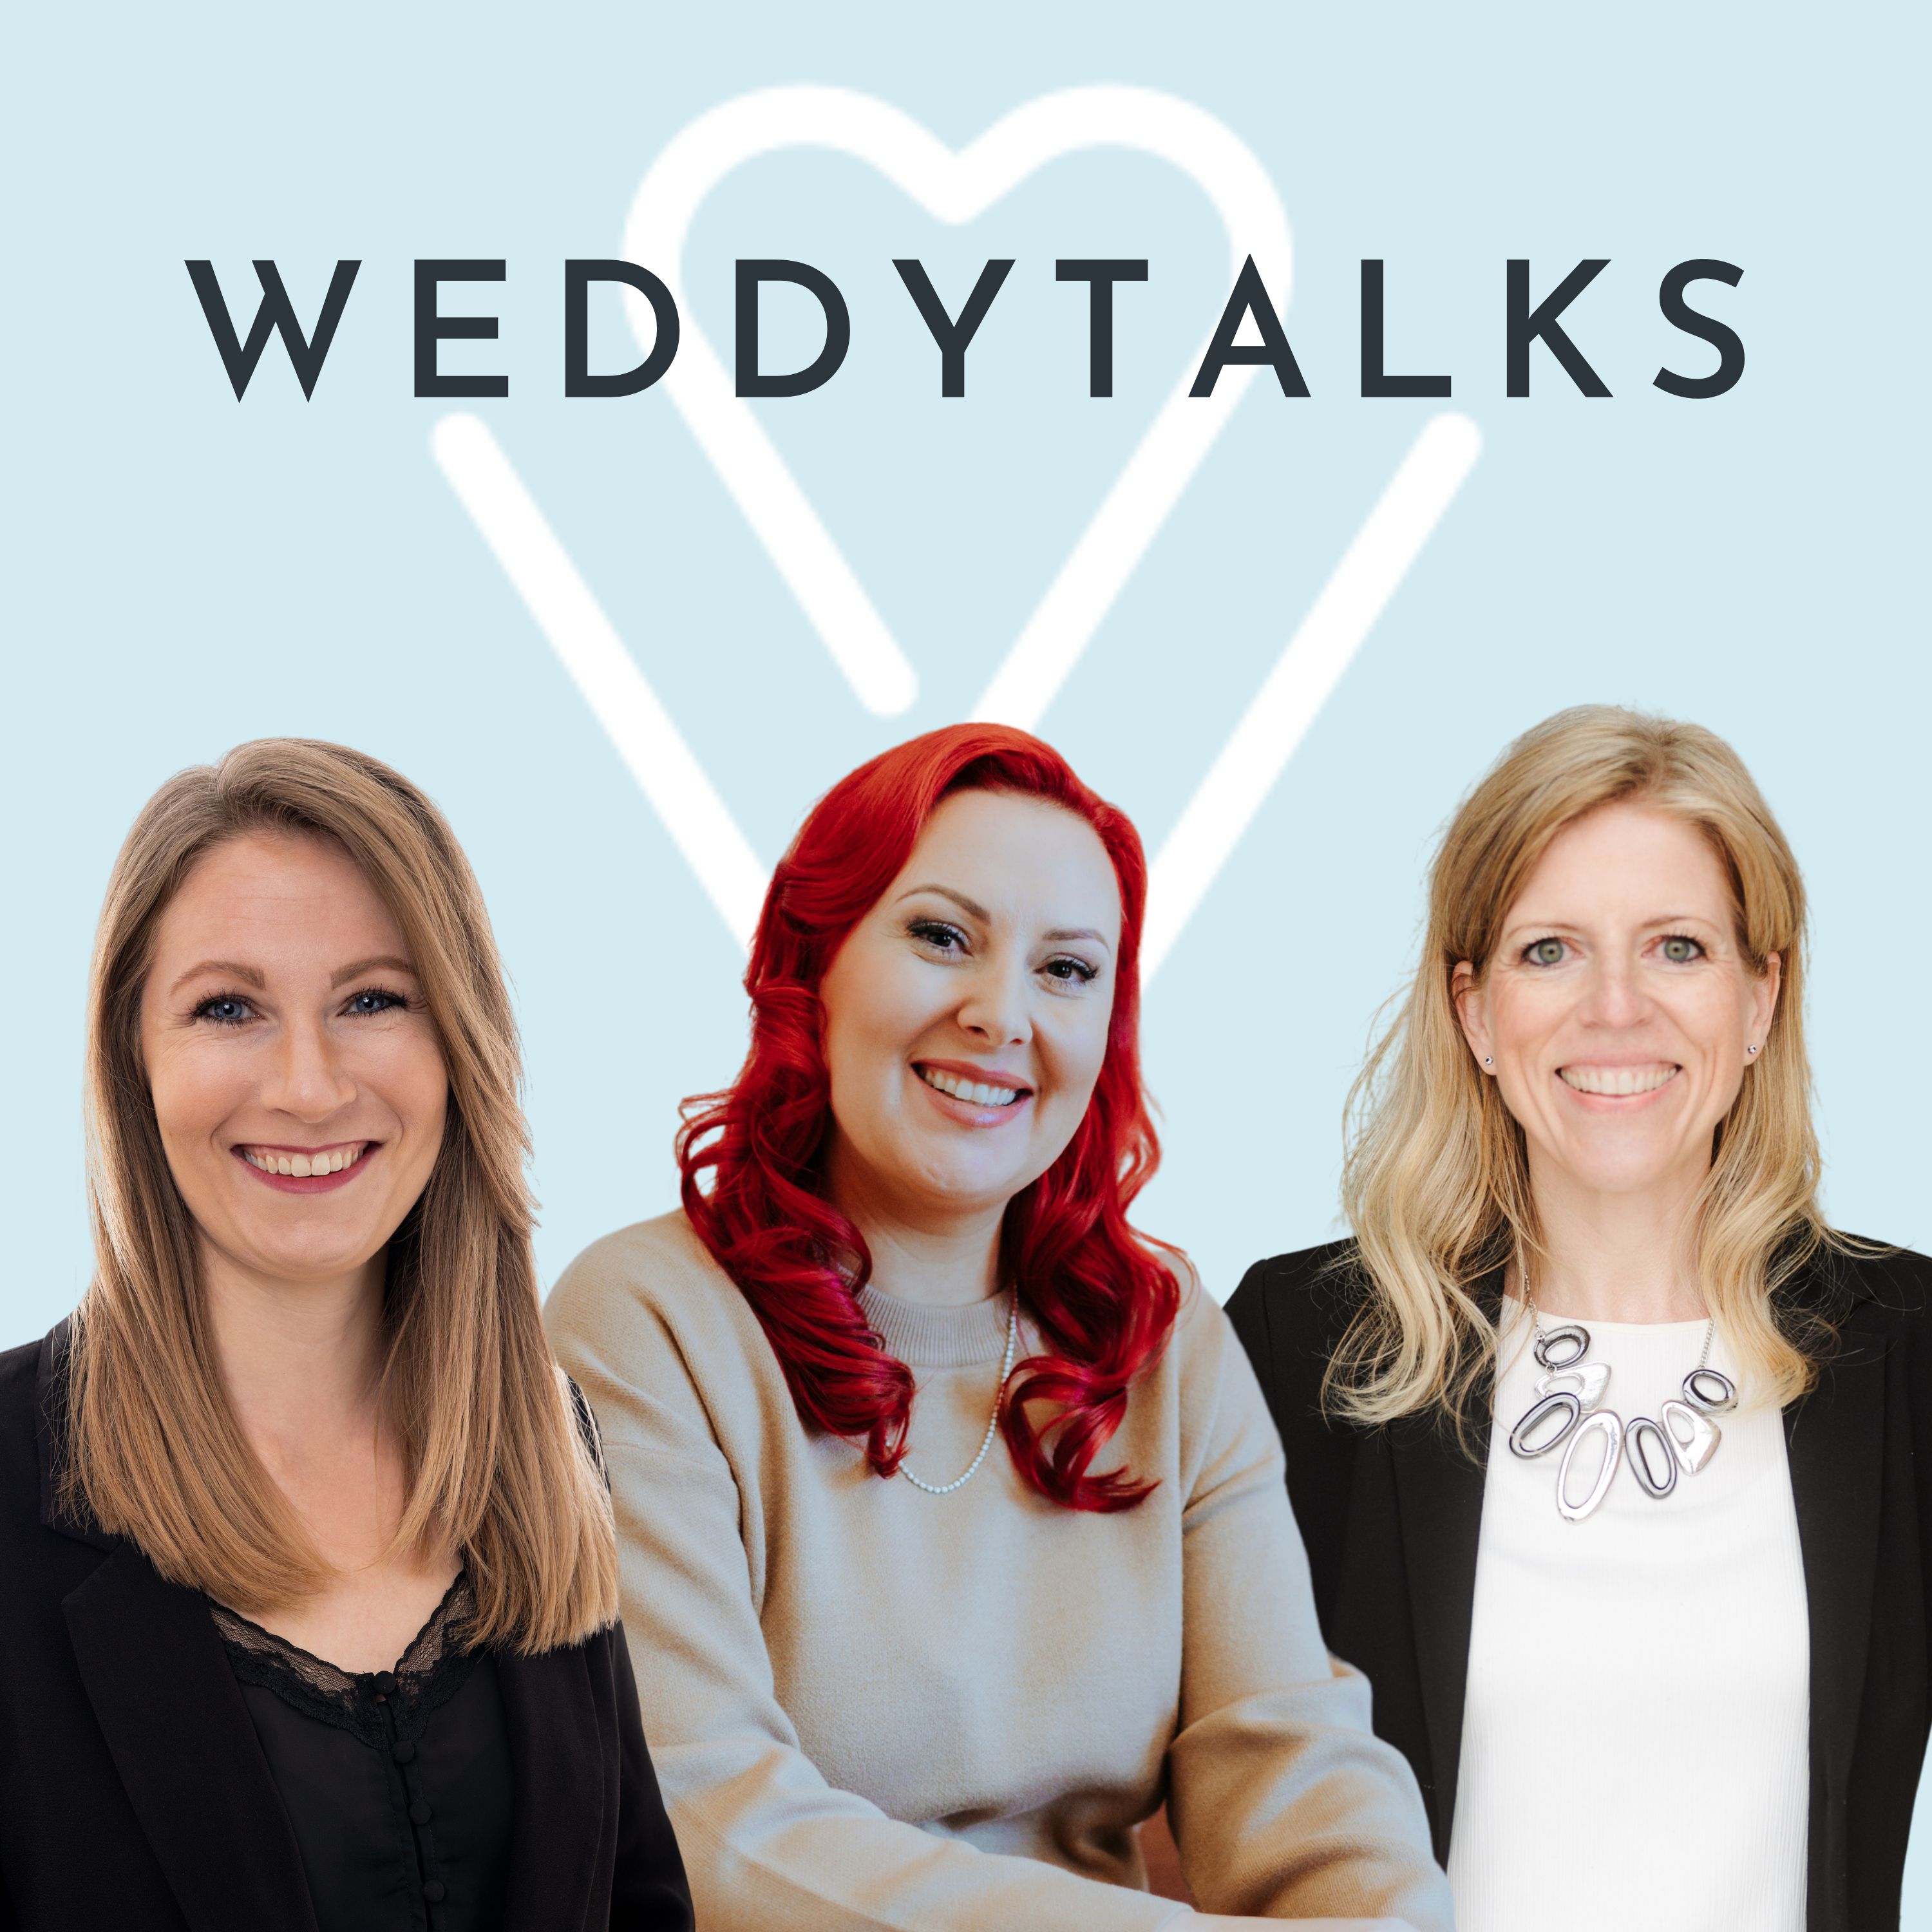 WeddyTalks Titelbild mit Svenja Schirk, Lena Freitag und Melanie Goldberg